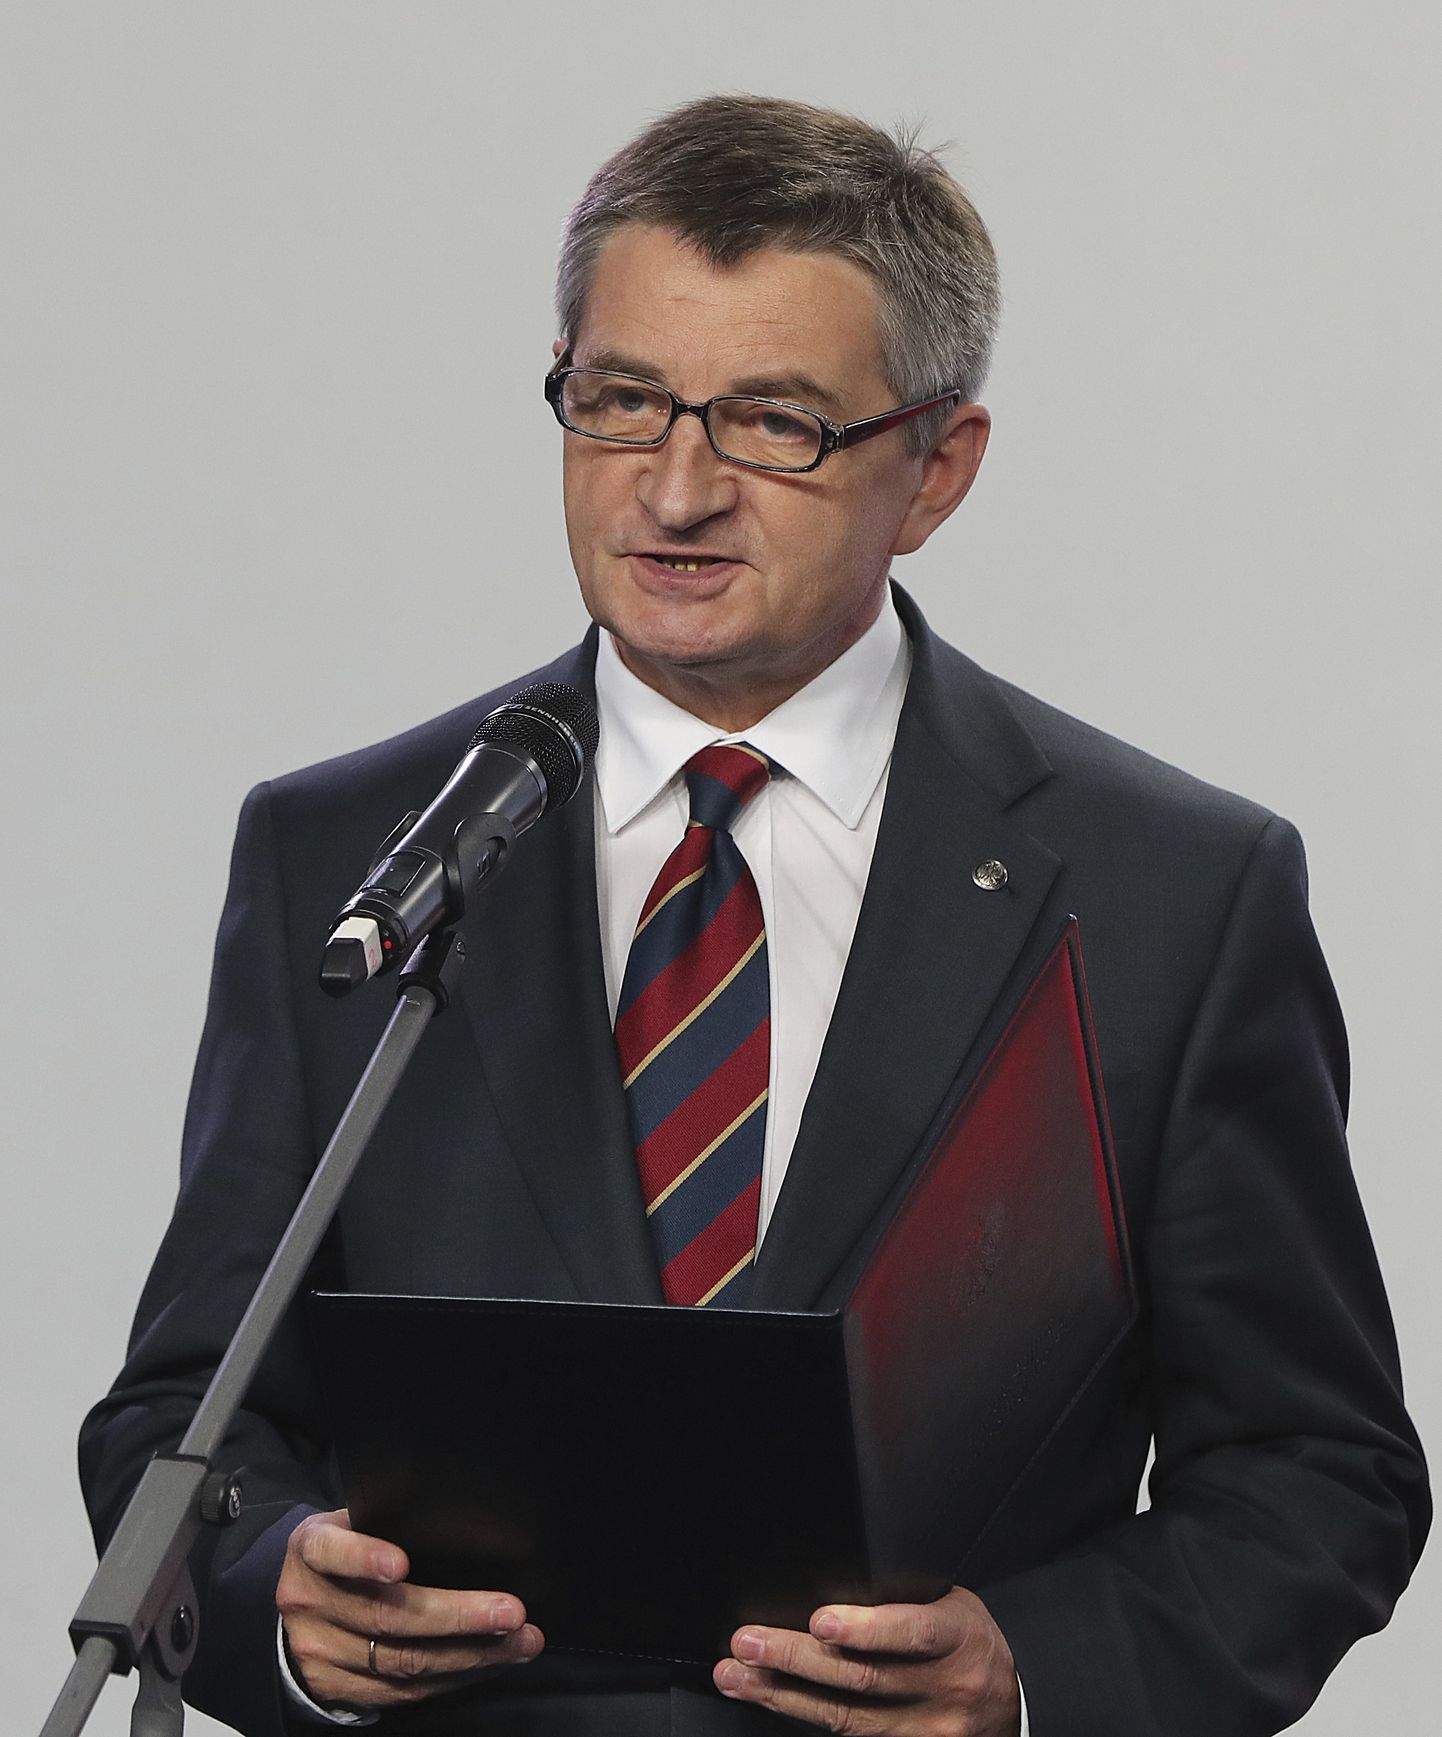 Poola võimuerakonda Seadus ja Õiglus (PiS) kuuluv parlamendispiiker Marek Kuchciński neljapäeval Varssavis ametist lahkumisest teatades.